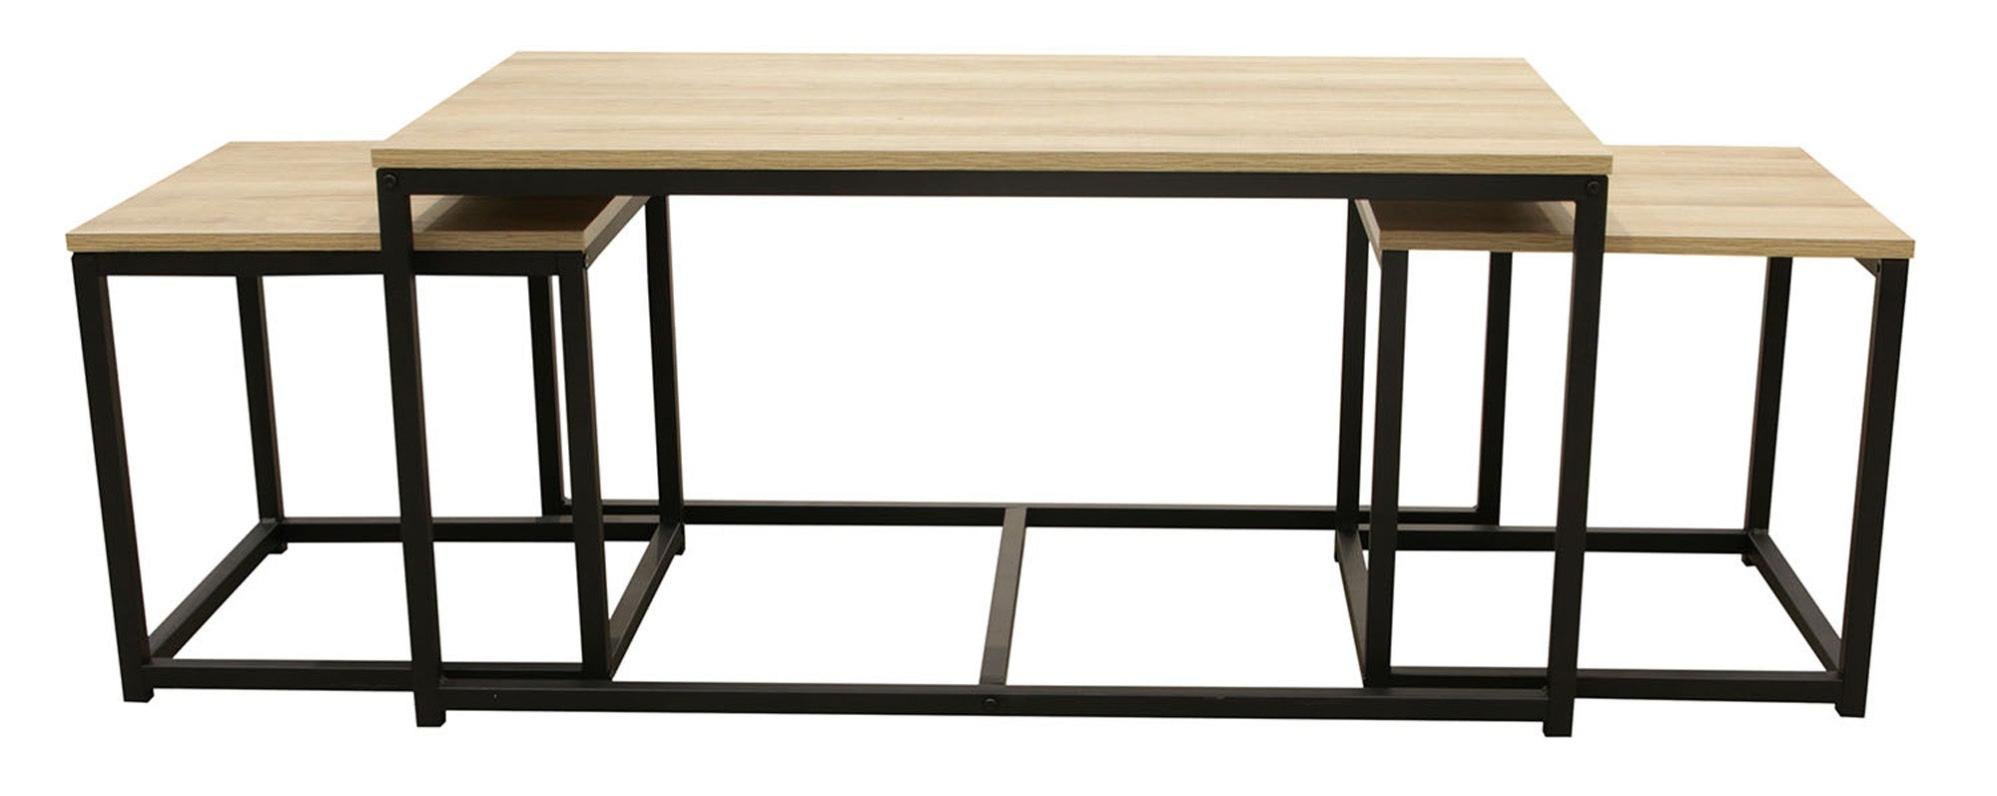 Set de 3 mesas de centro seattle rectangulares de mdf color negro de 50x90x50cm